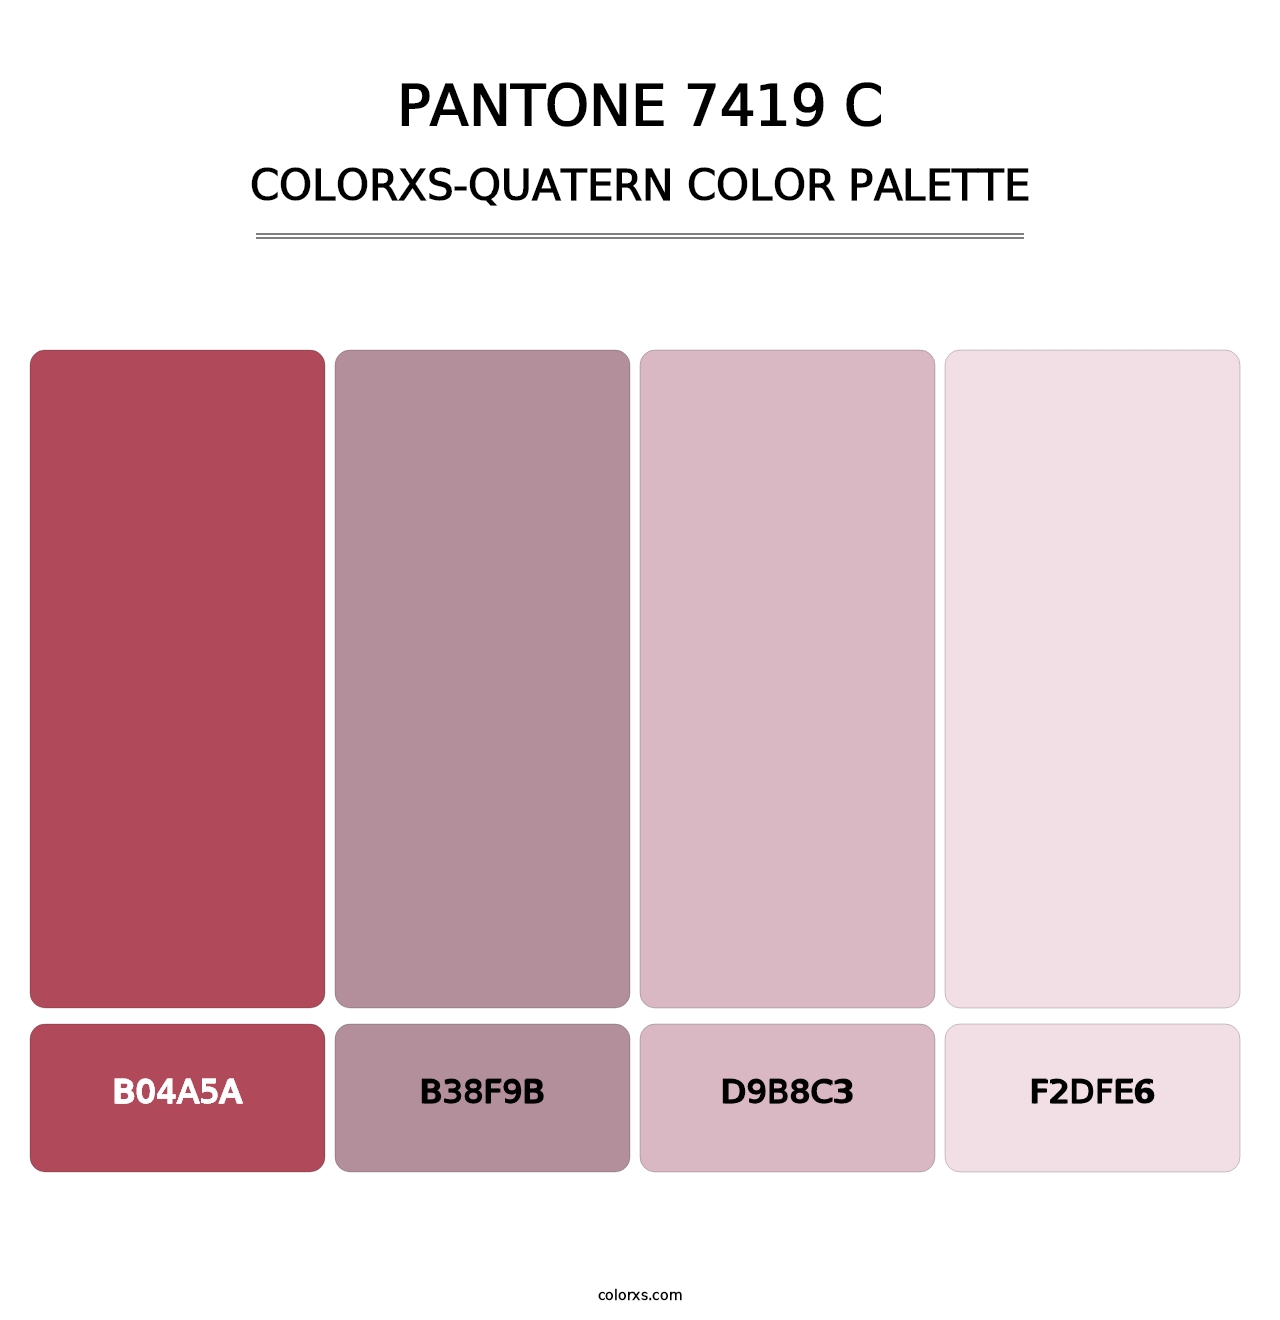 PANTONE 7419 C - Colorxs Quatern Palette